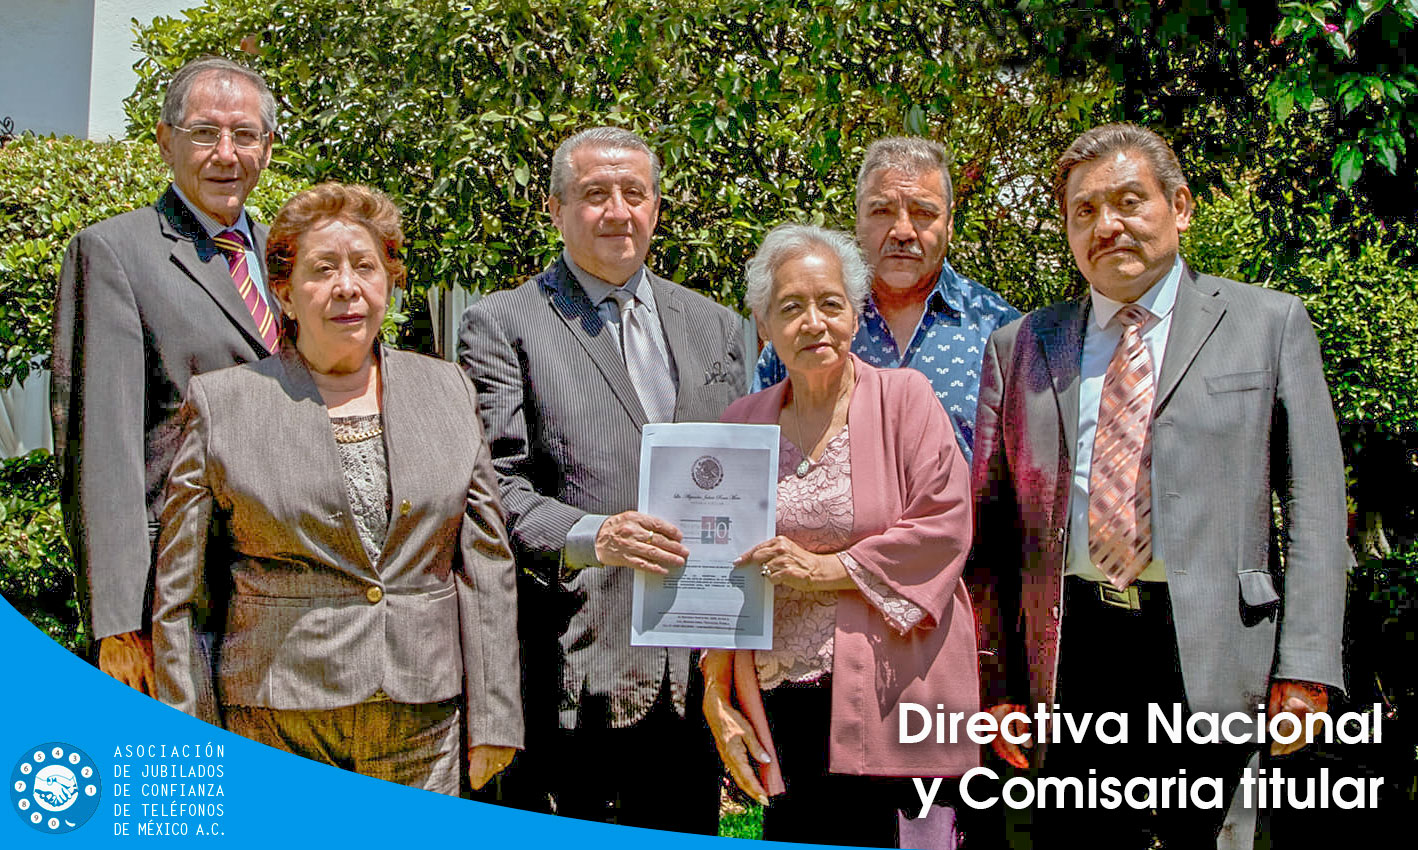 Directiva Nacional - Asociación de Jubilados de Confianza de Teléfonos de México A.C.